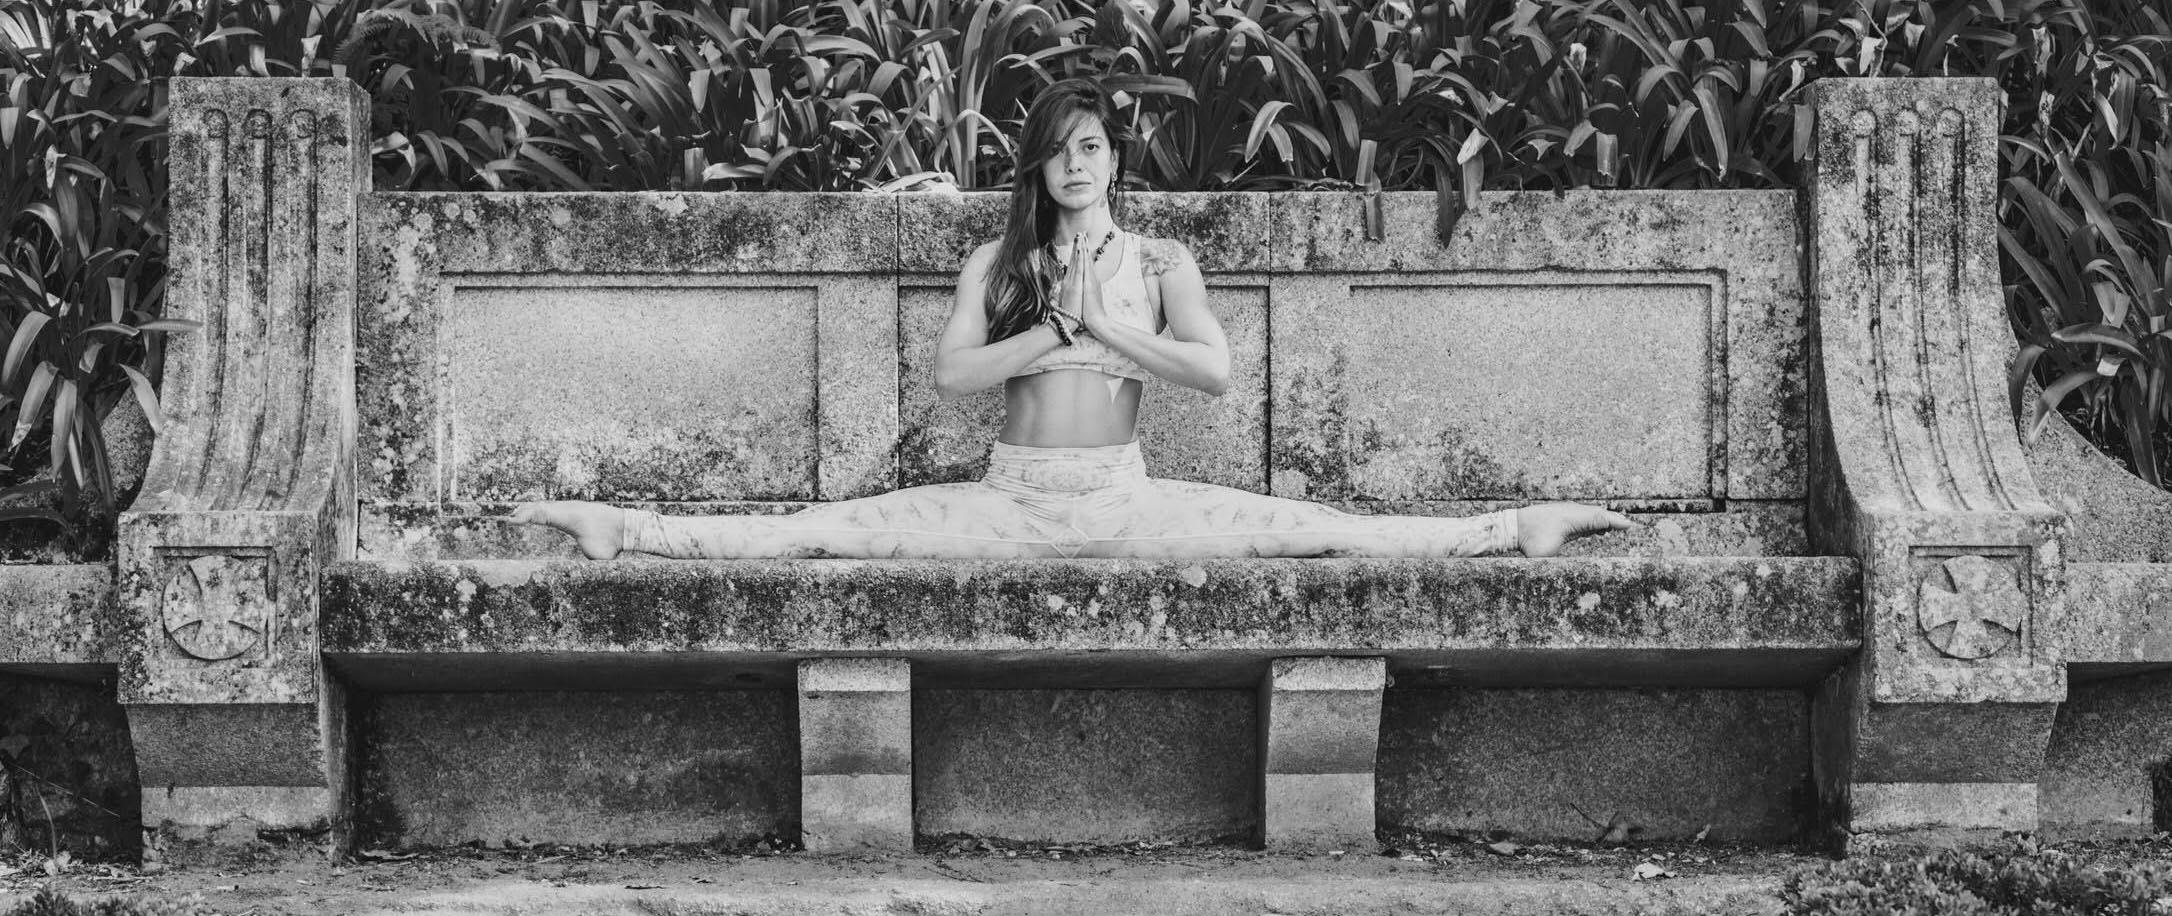 ASHTANGA VINYASA BIANCA OLIVEIRA - Prana Studio Yoga